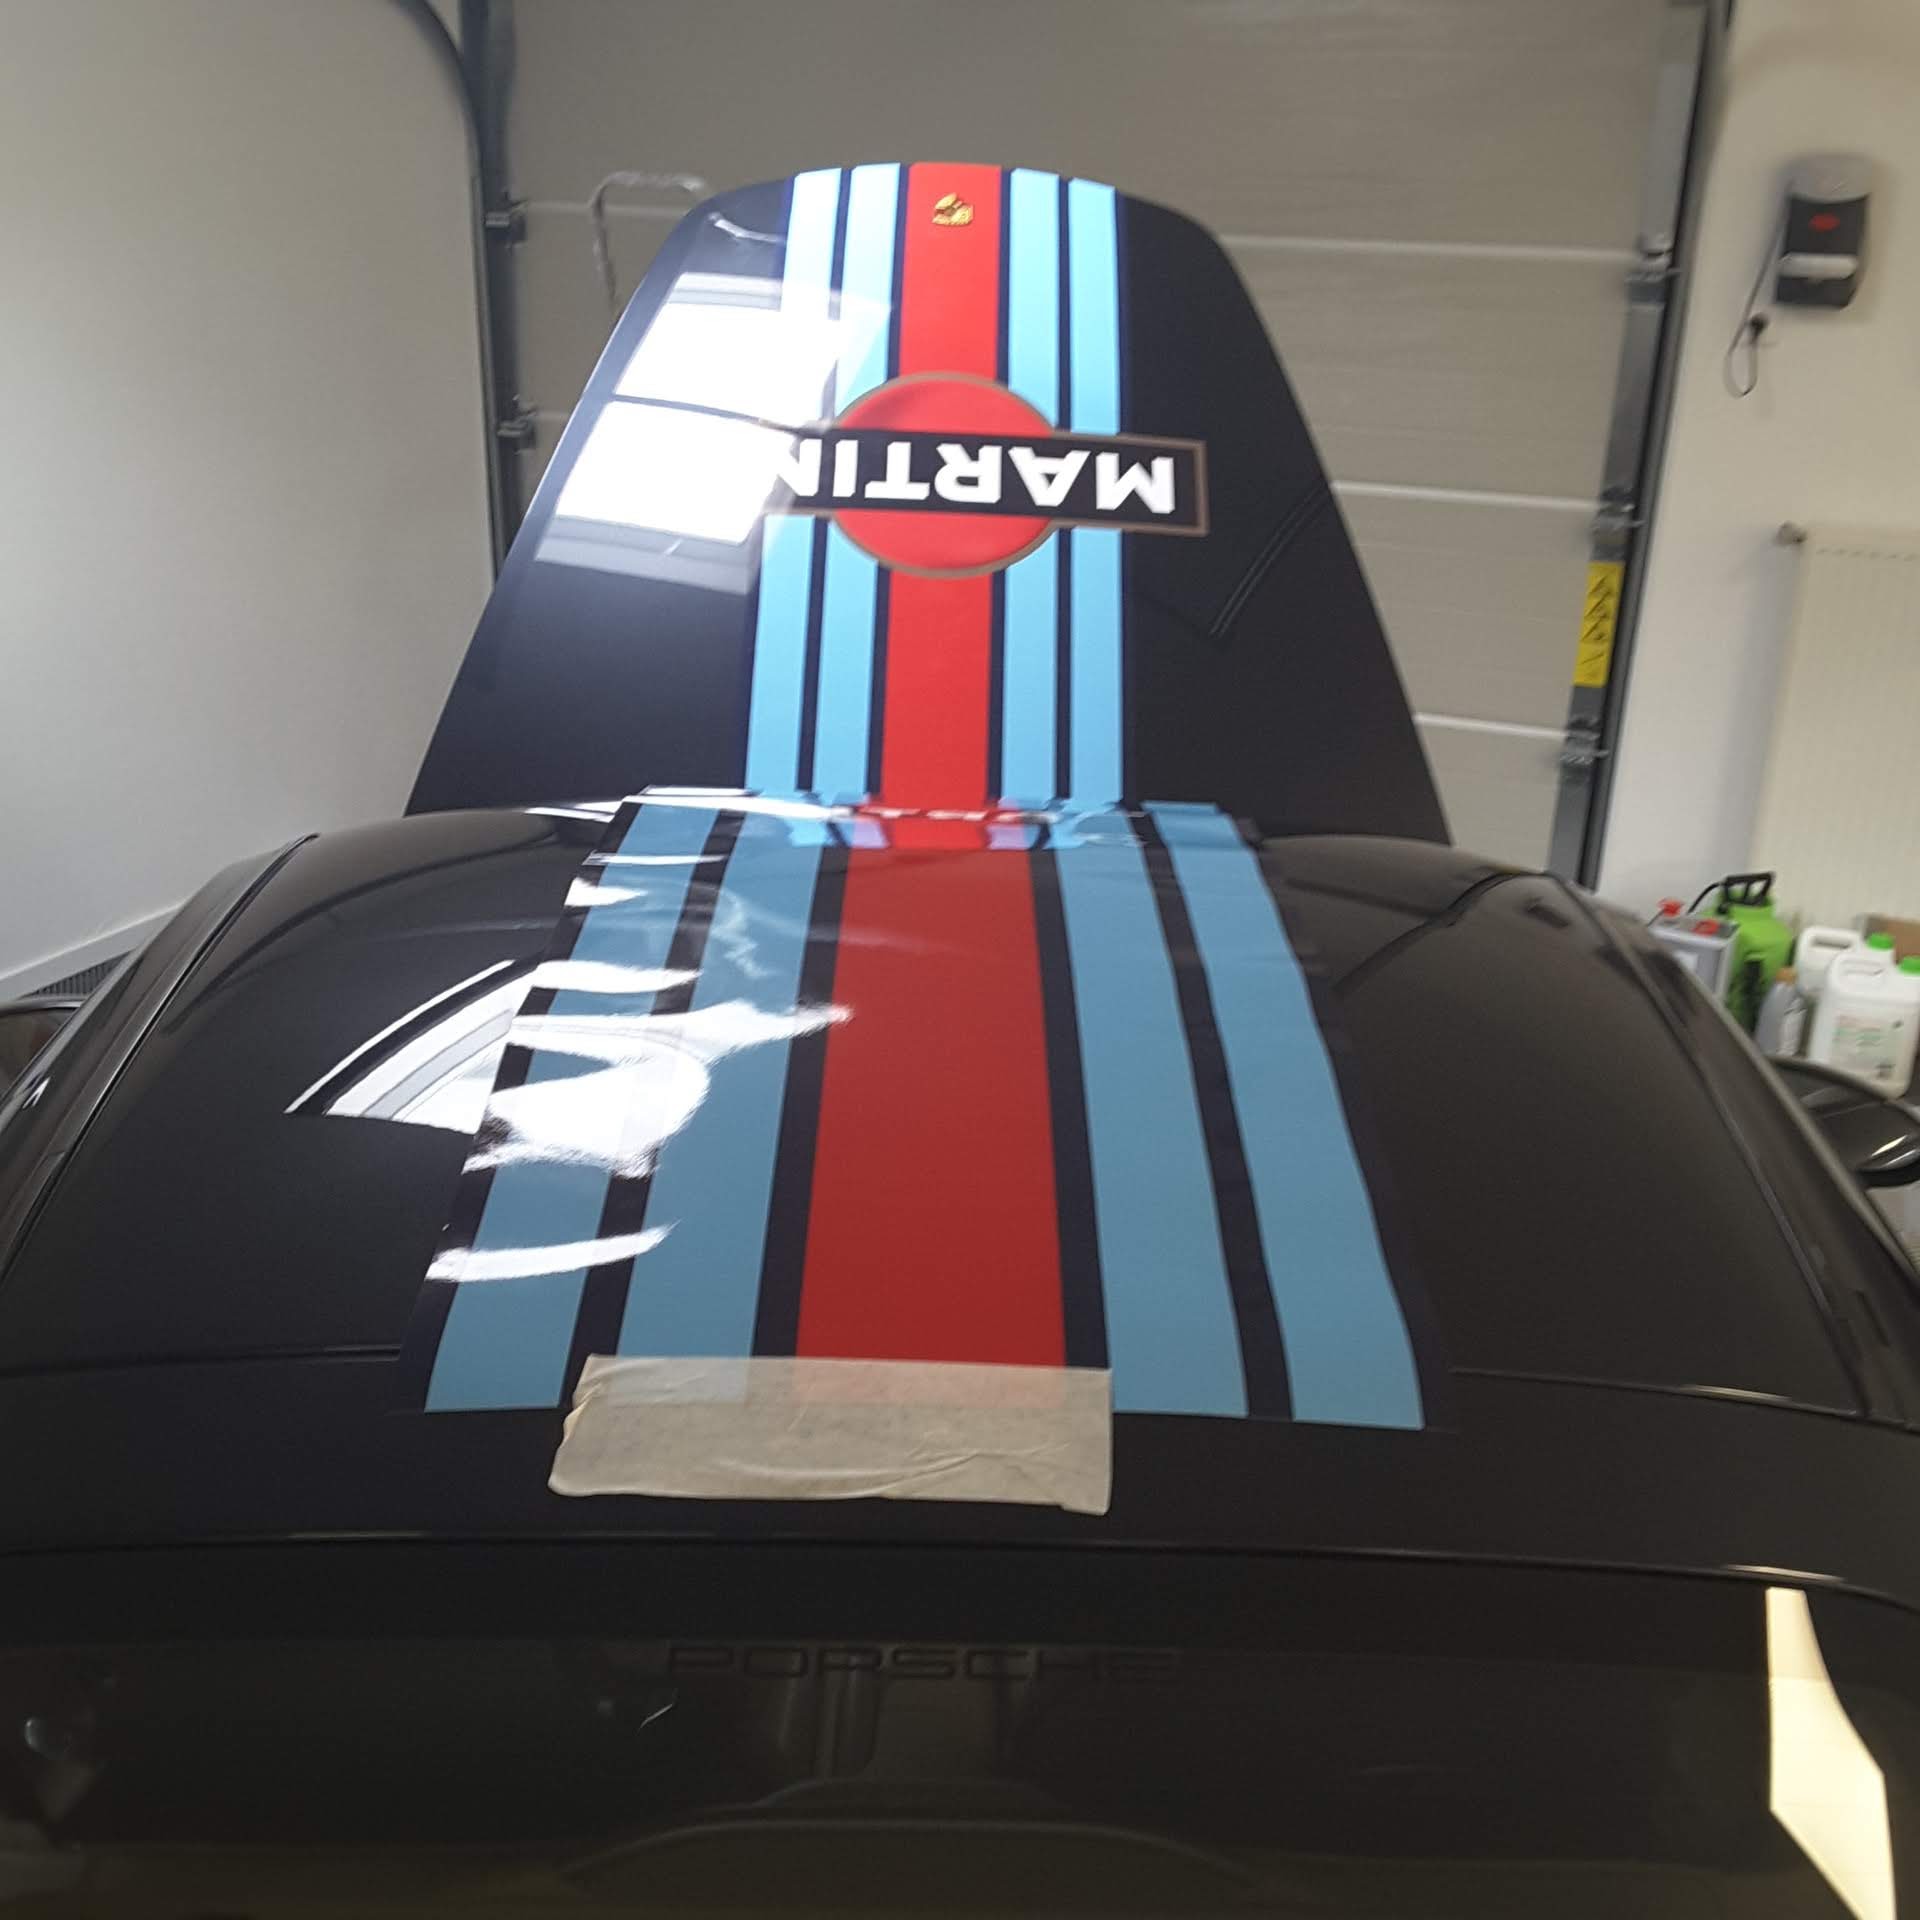 Sticker für die Motorhaube auto Martini